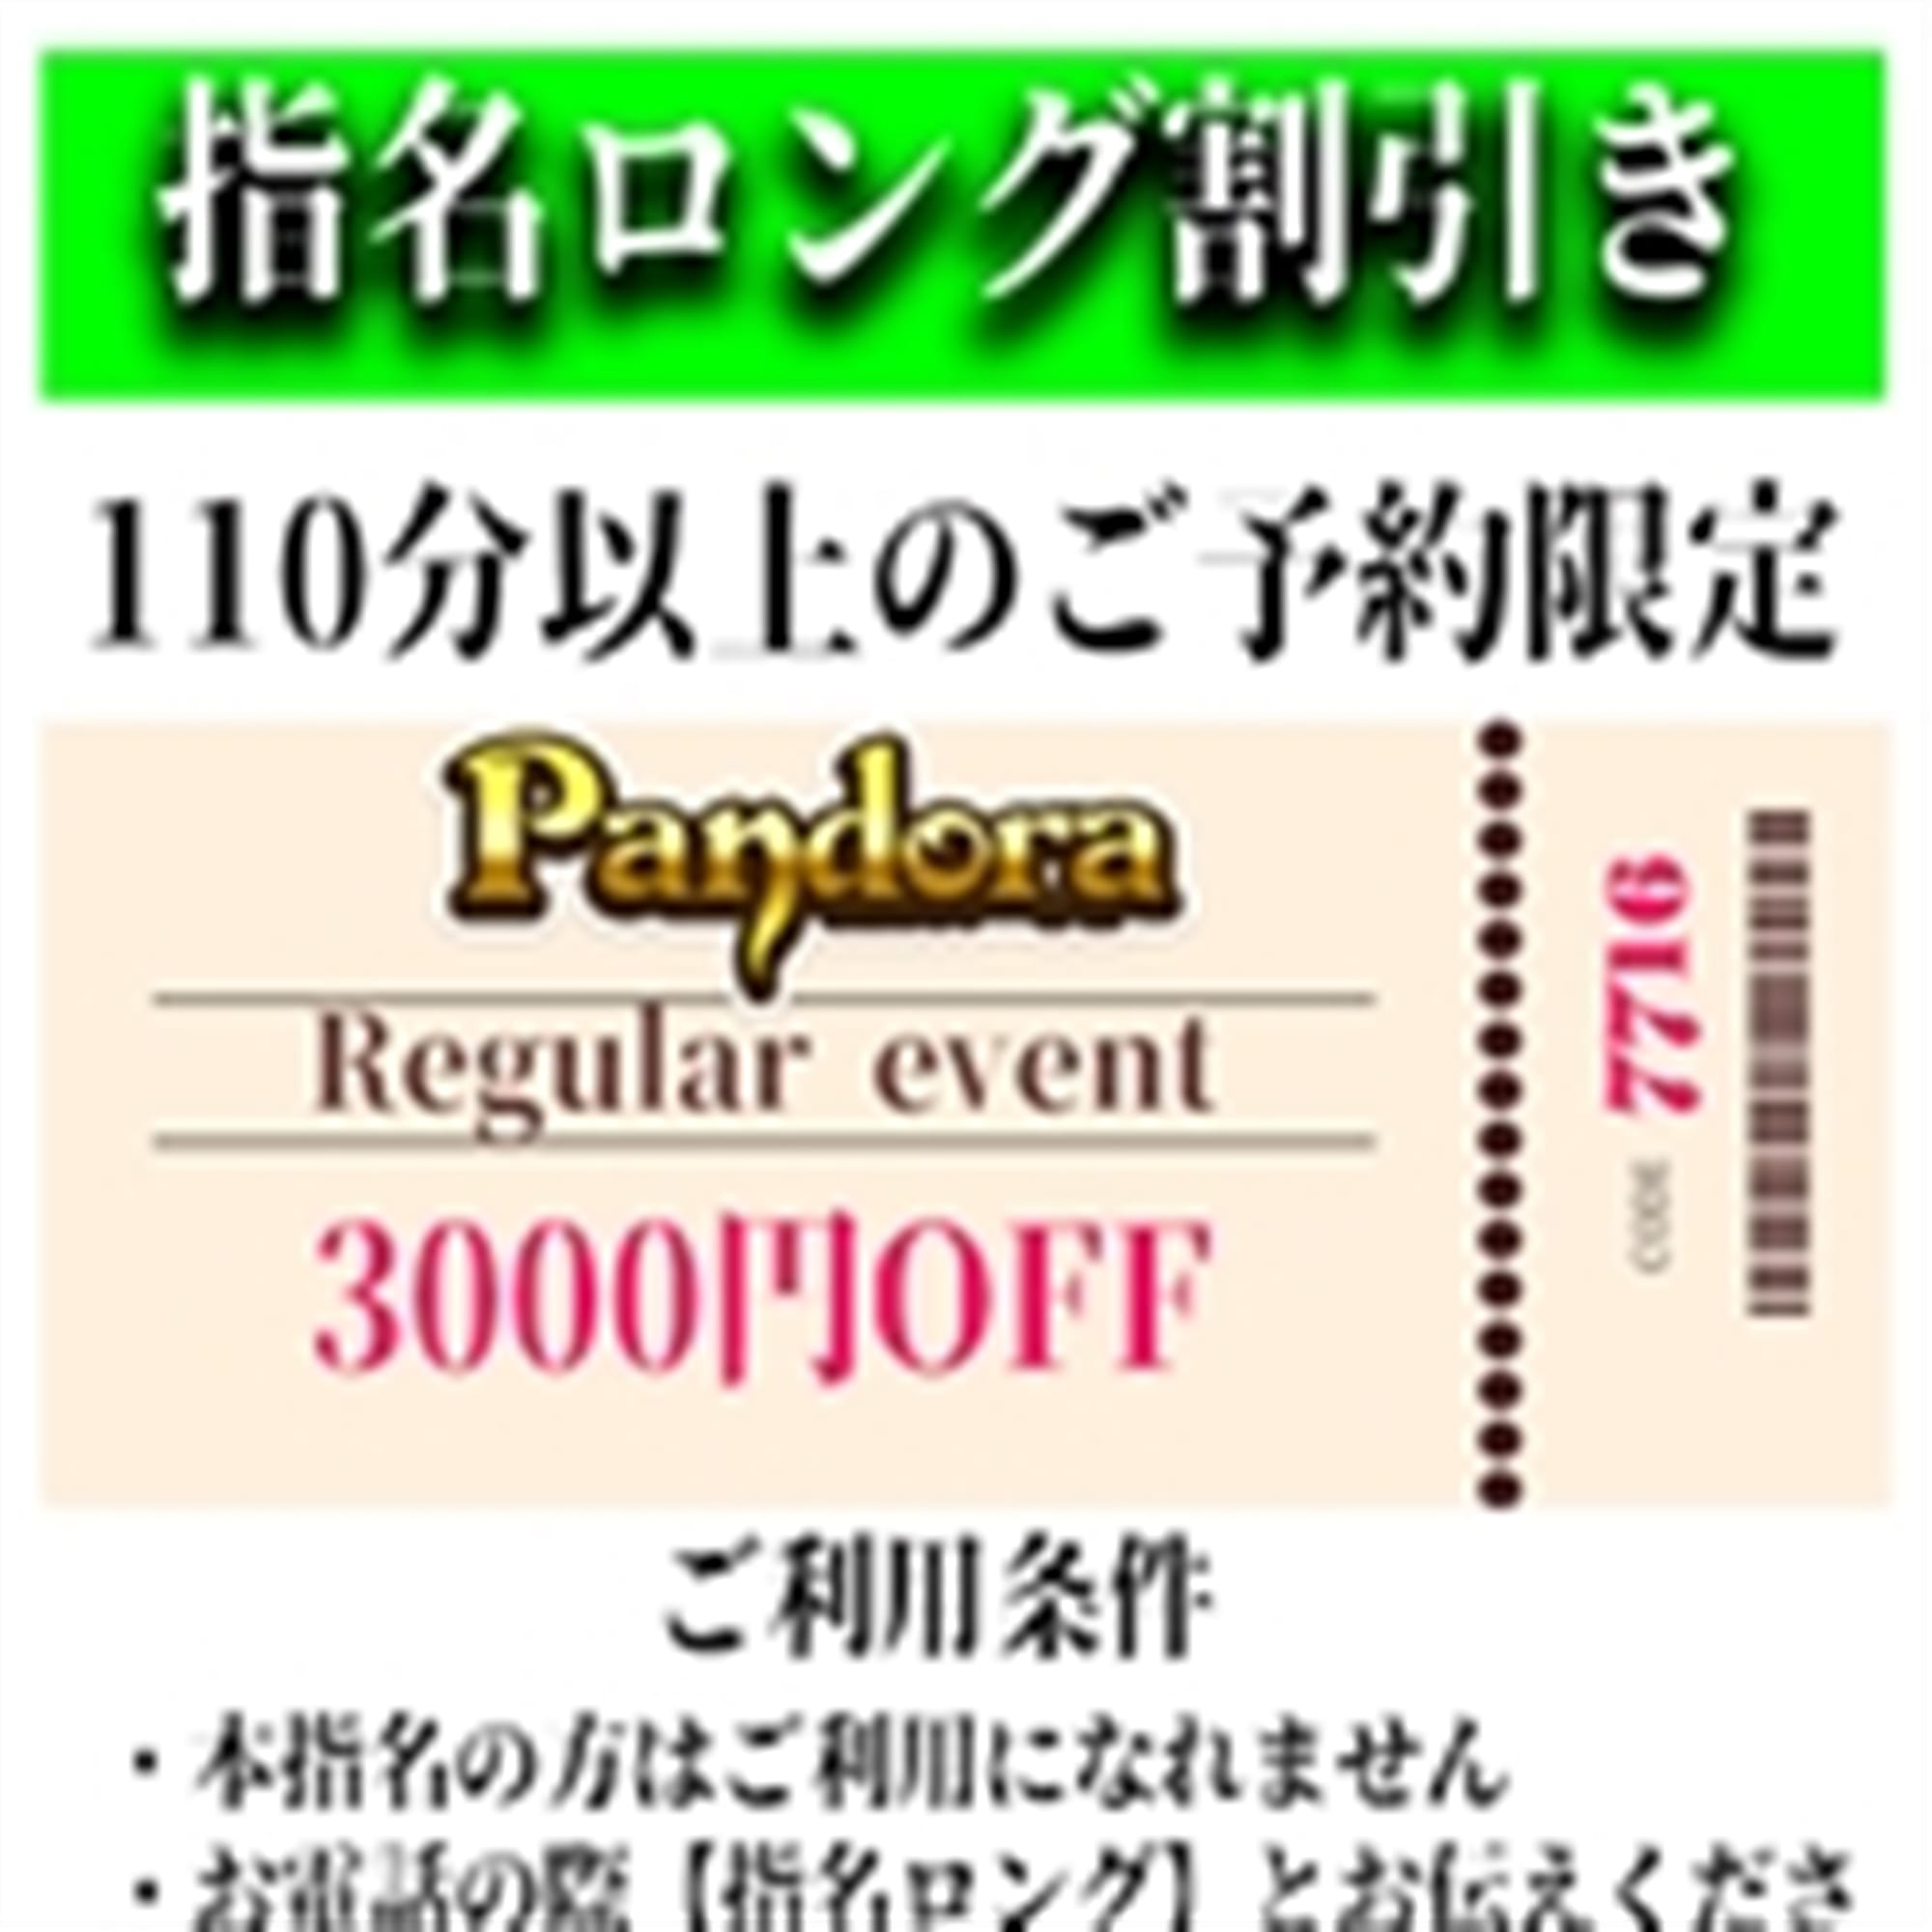 「ご指名のお客様も遊べるロングコース割引」04/26(金) 17:46 | Pandora(パンドラ)新潟のお得なニュース